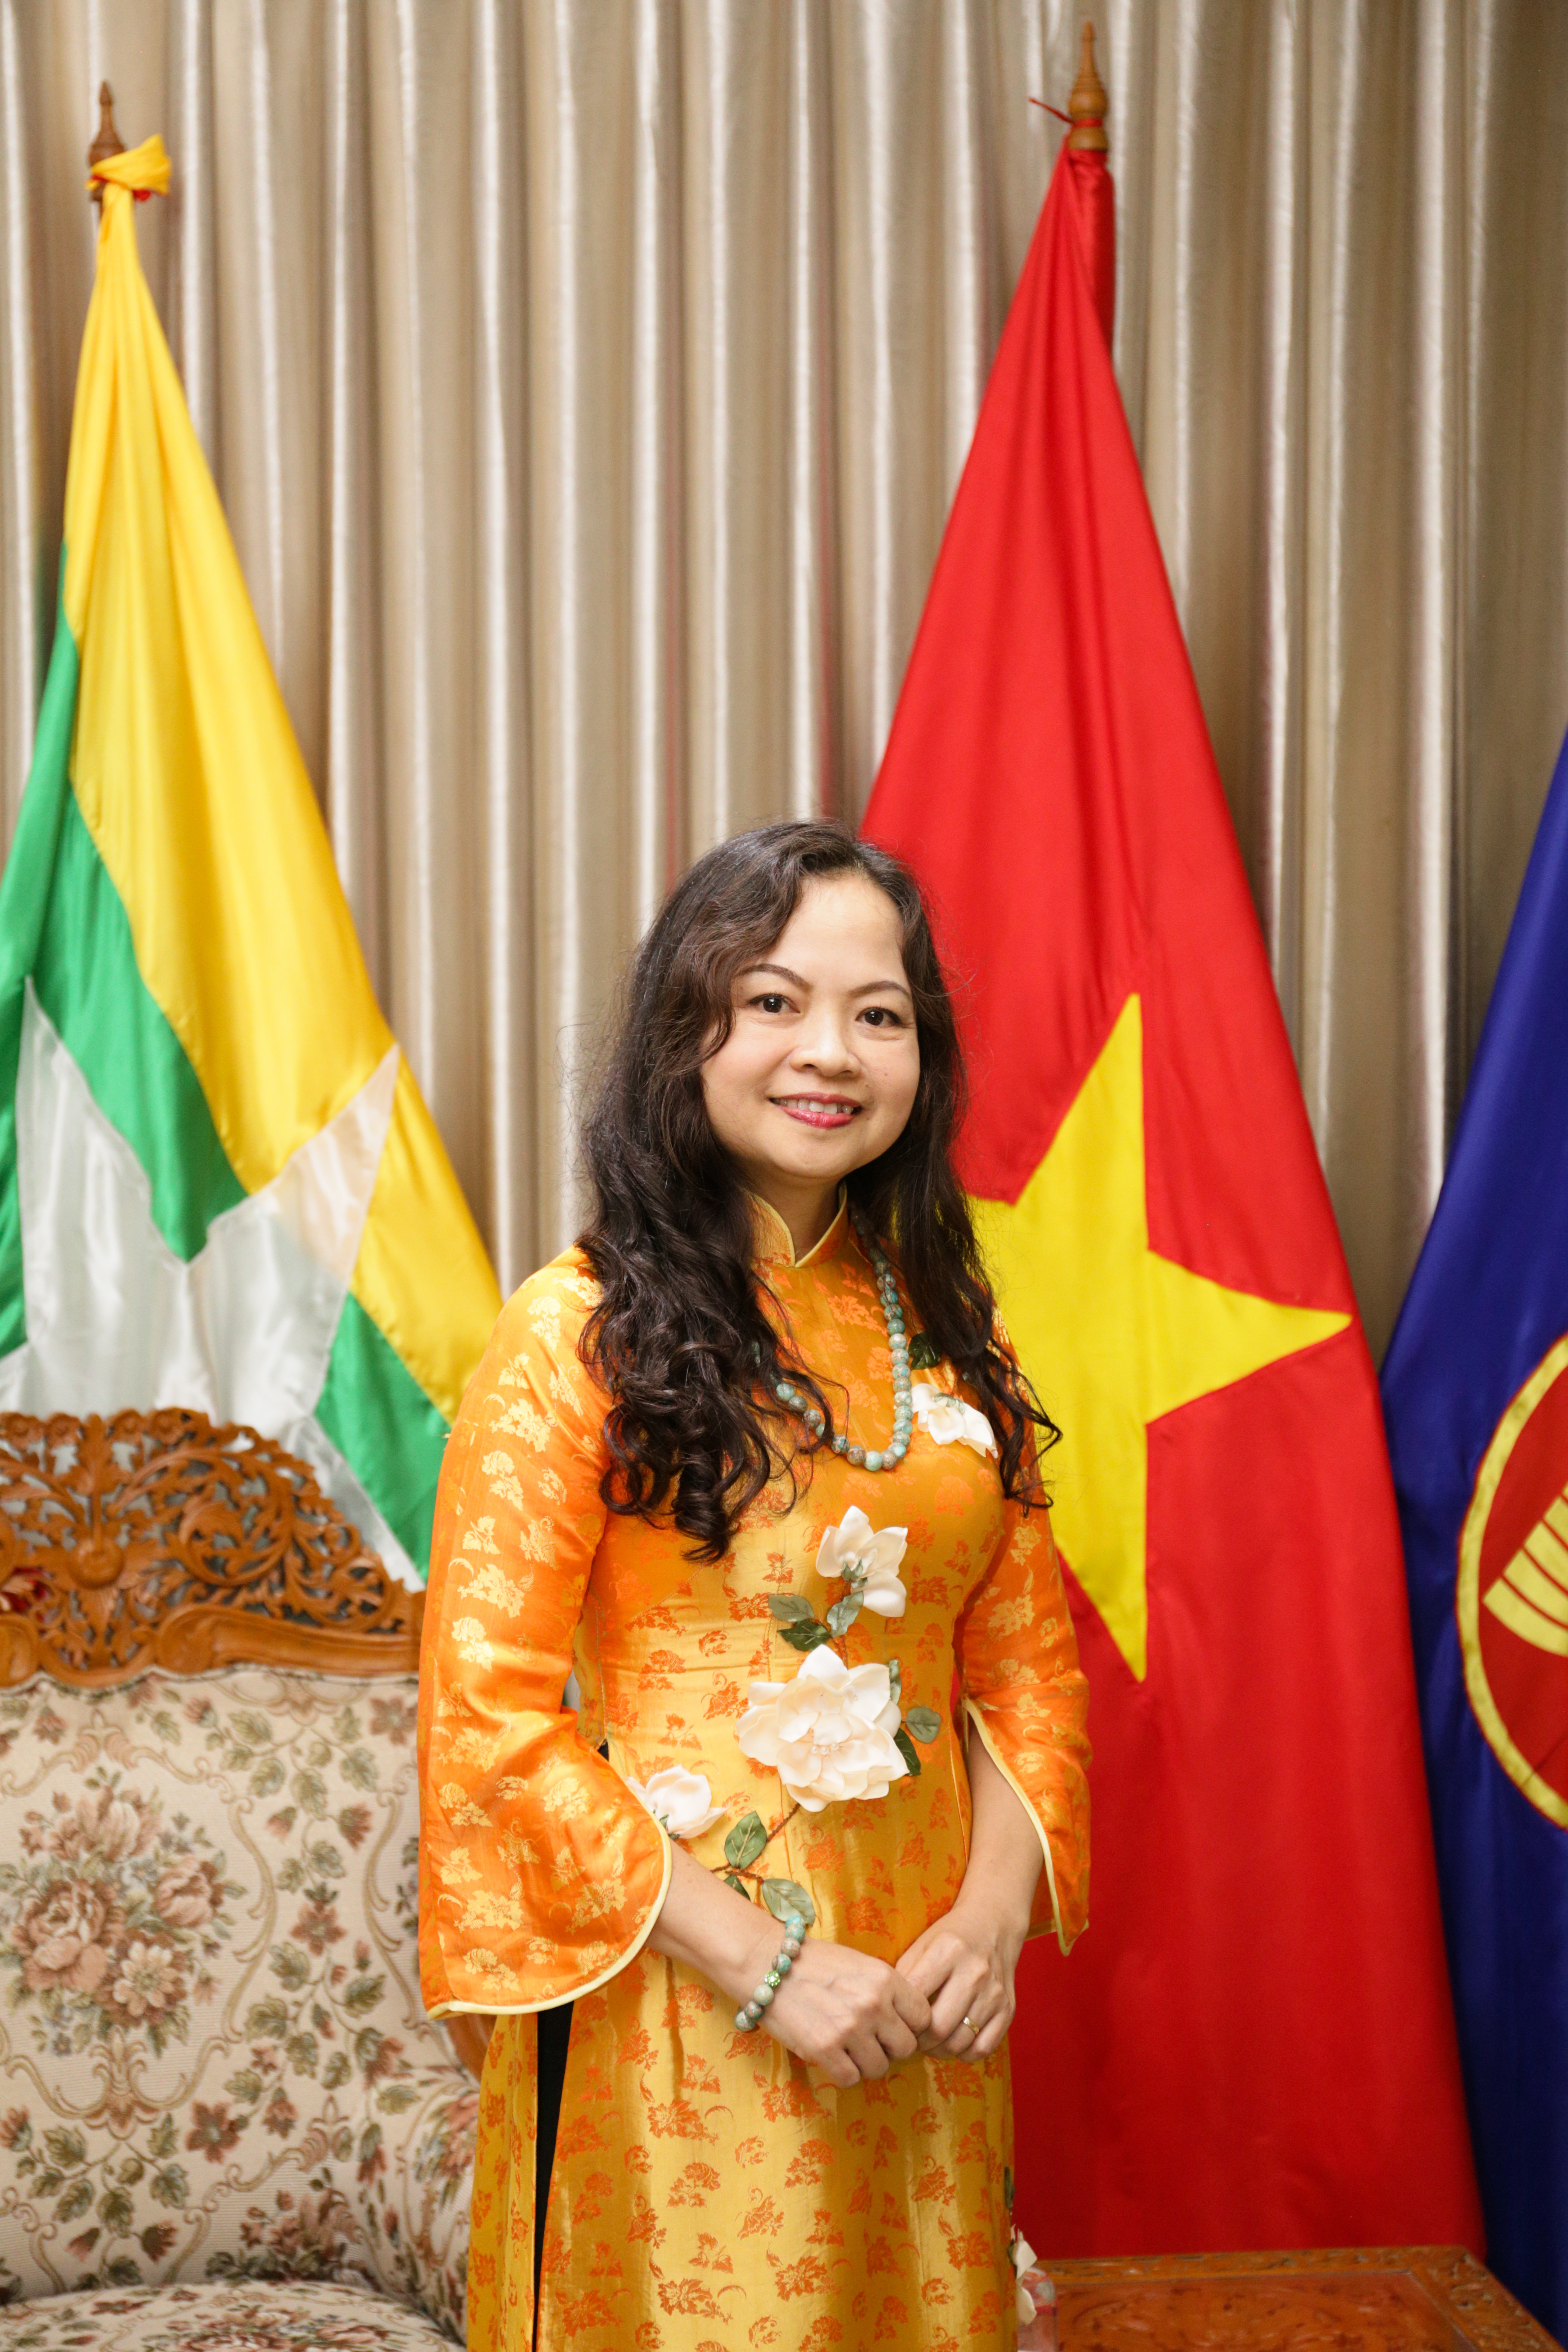 Hợp tác Việt Nam-Myanmar 2024: Hợp tác Việt Nam-Myanmar 2024 đánh dấu một bước ngoặt quan trọng trong quan hệ hai nước. Với những tiềm năng kinh tế và địa lý, sự hợp tác này sẽ mang lại những lợi ích to lớn cho cả Việt Nam và Myanmar. Hình ảnh liên quan đến hợp tác này chắc chắn sẽ thu hút được sự quan tâm của đông đảo người dân và doanh nghiệp của hai nước.